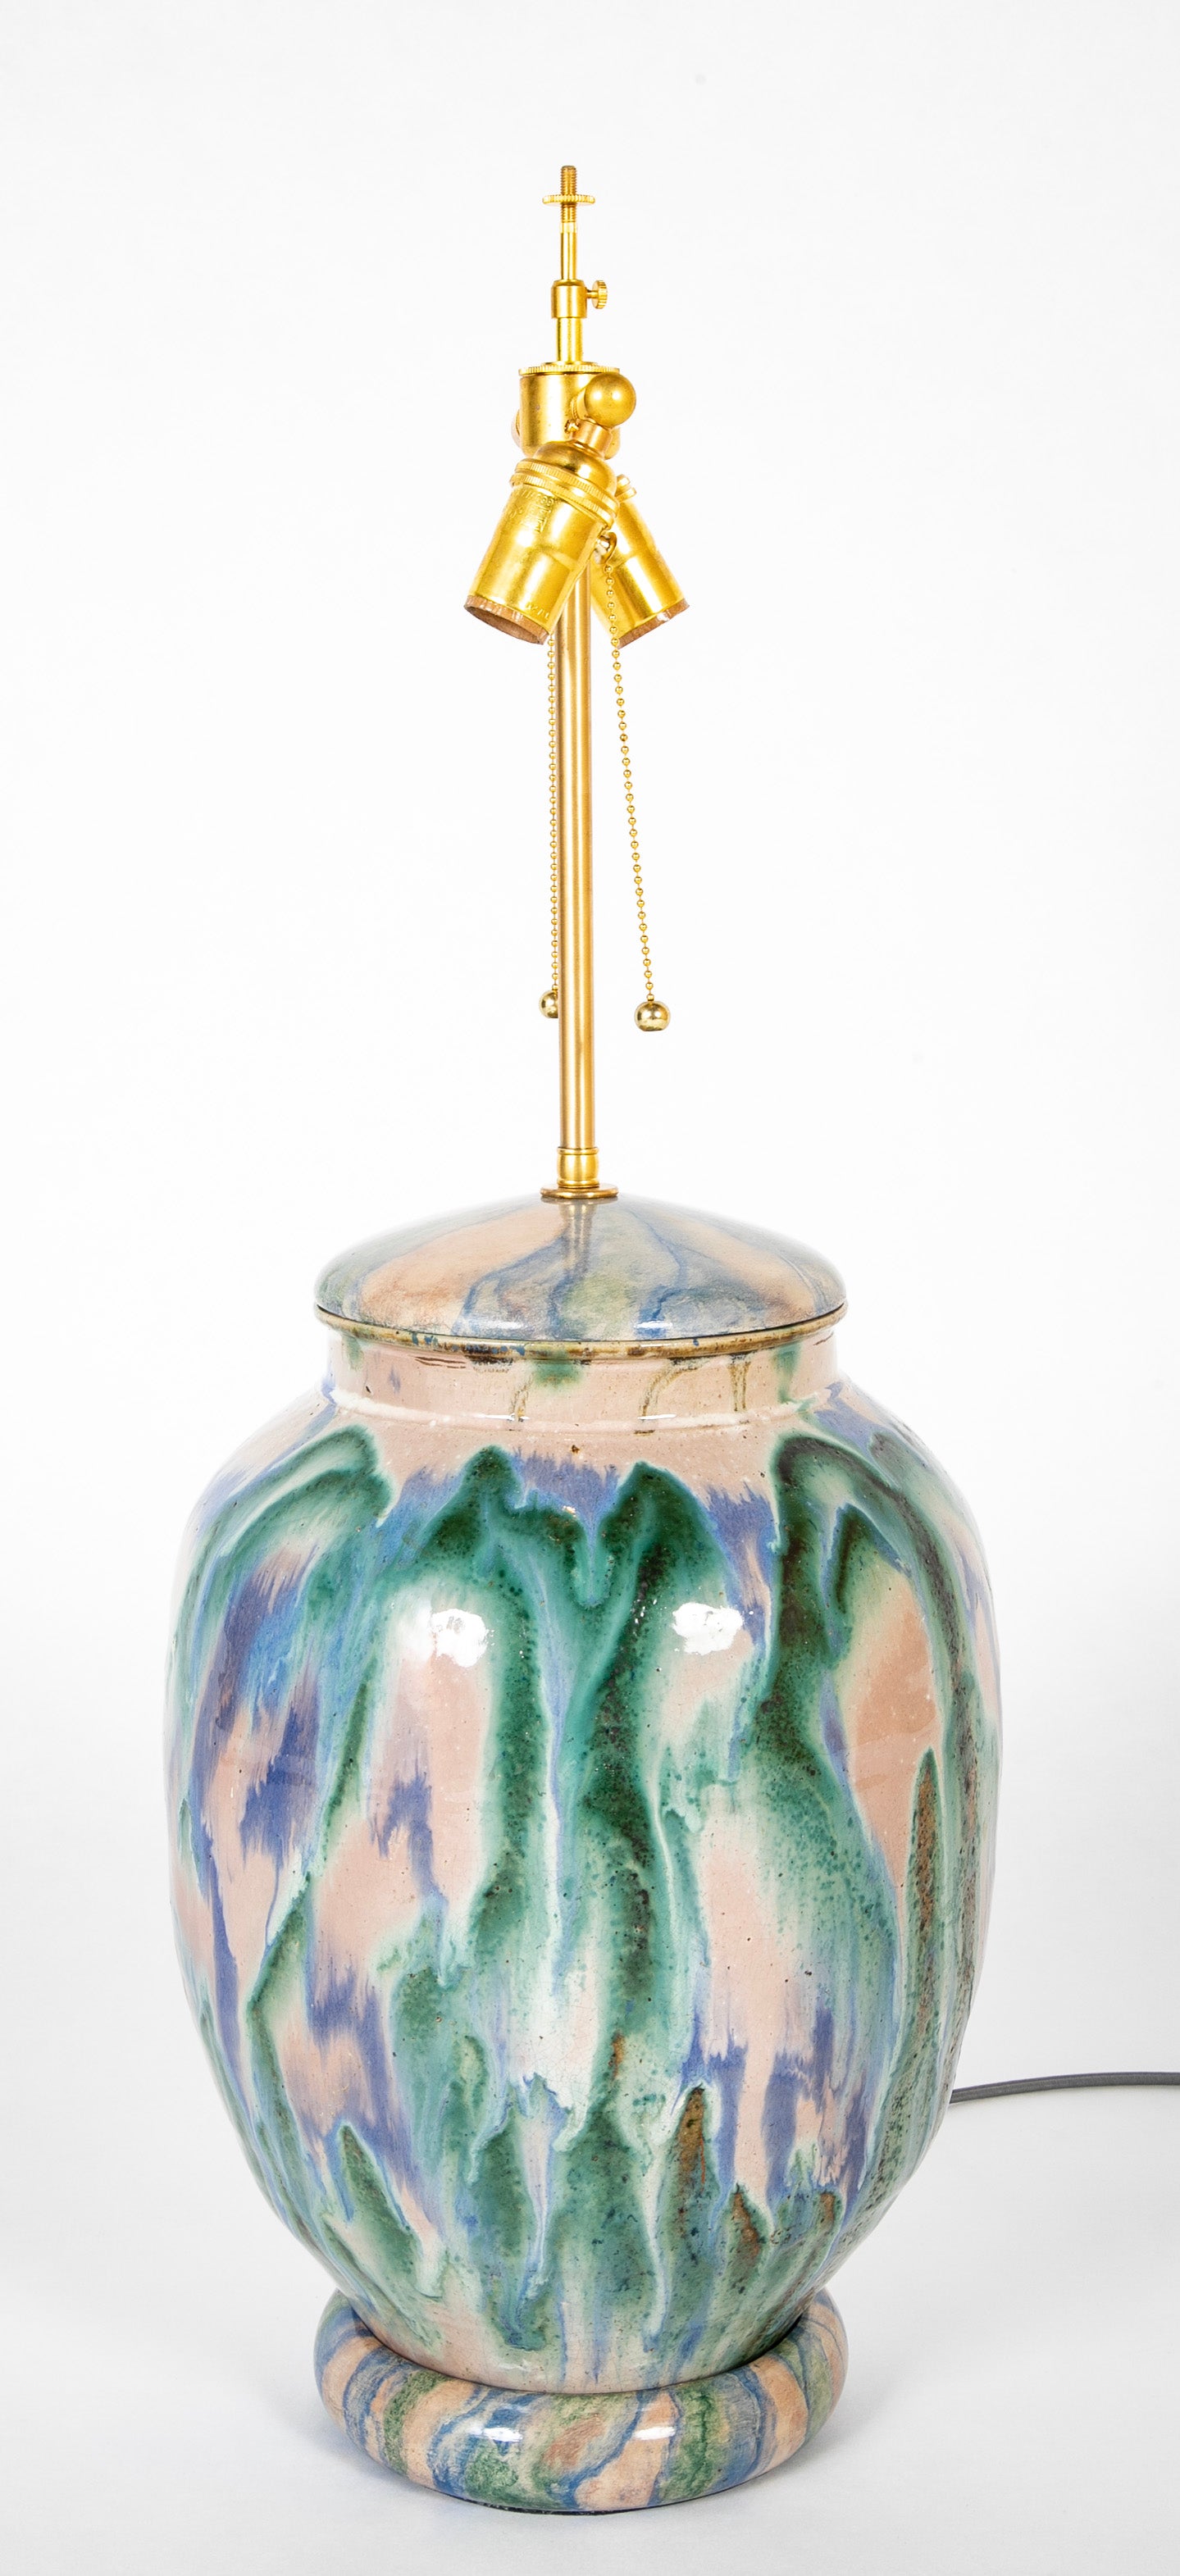 A Japanese Shigaraki Ceramic Storage Jar now a Lamp